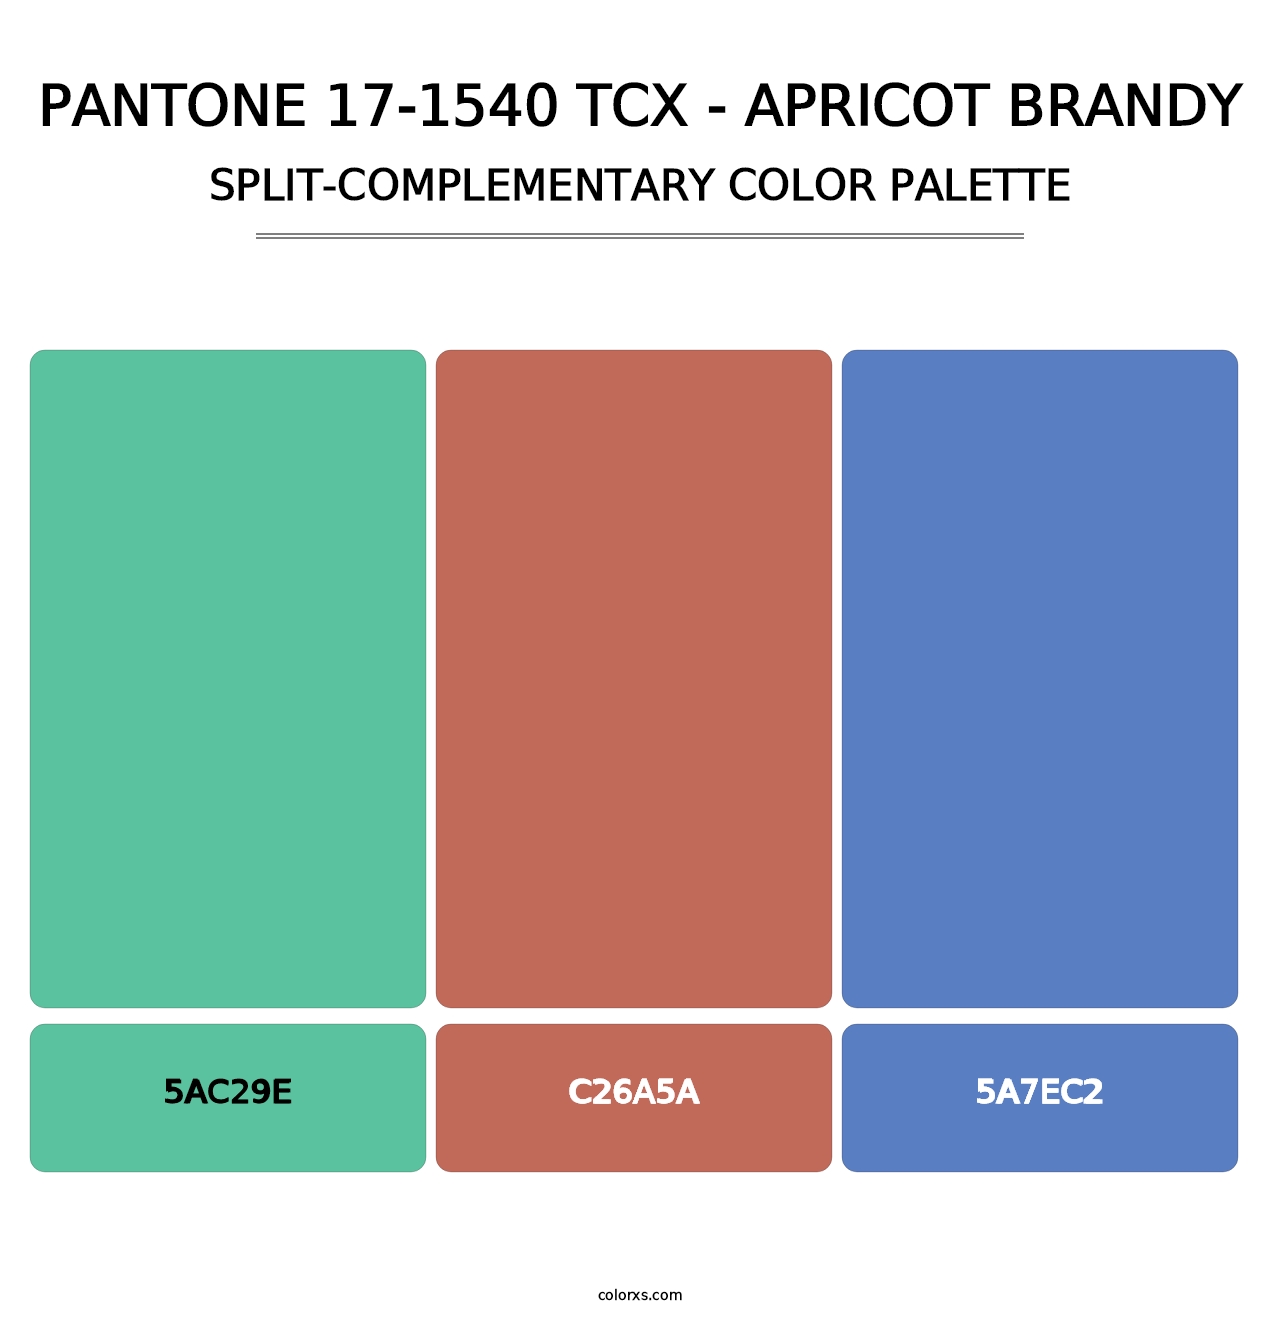 PANTONE 17-1540 TCX - Apricot Brandy - Split-Complementary Color Palette